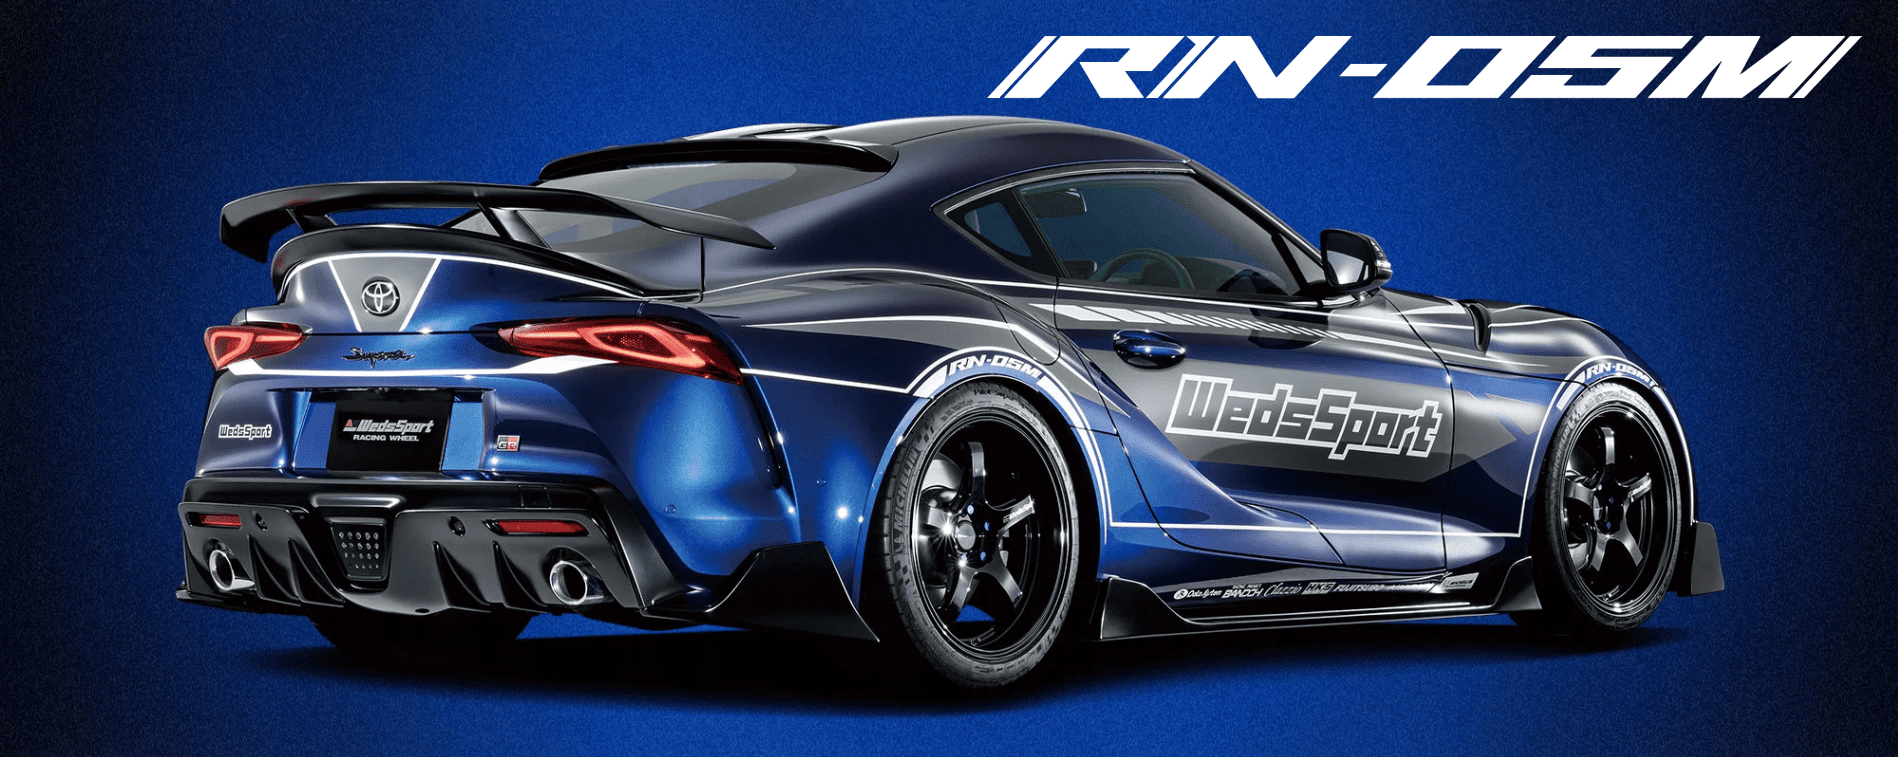 A toyota rn-dsm sports car on a blue background.